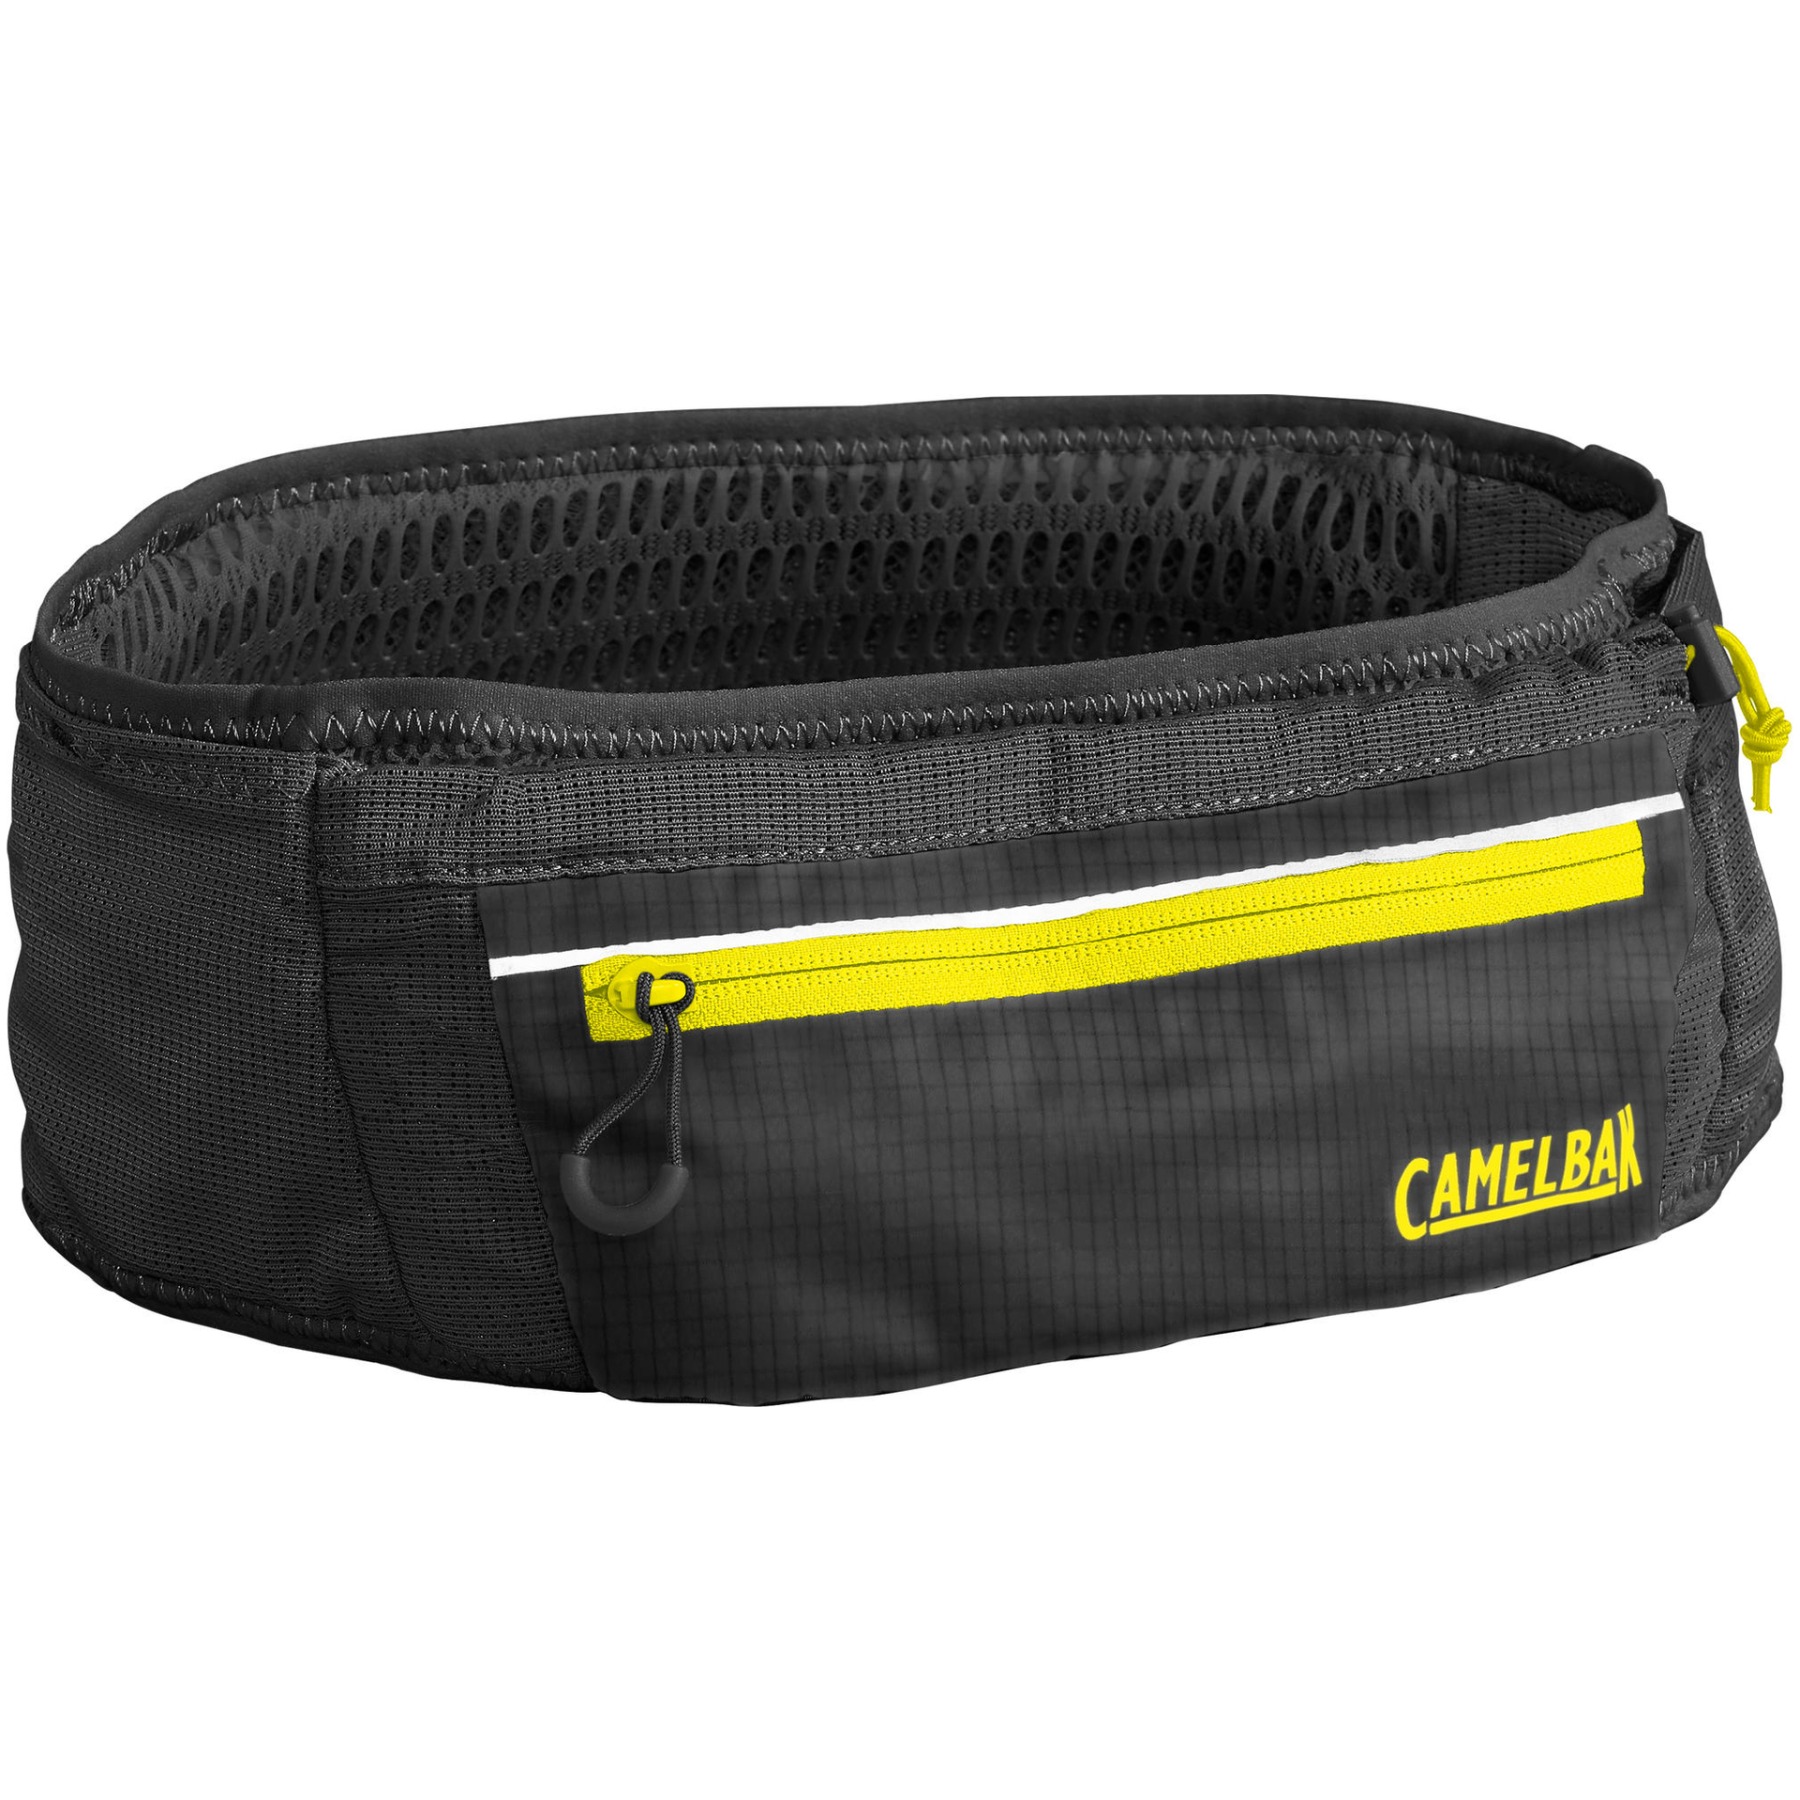 Produktbild von CamelBak Ultra Belt Hüfttasche - M/L - Black/safety yellow